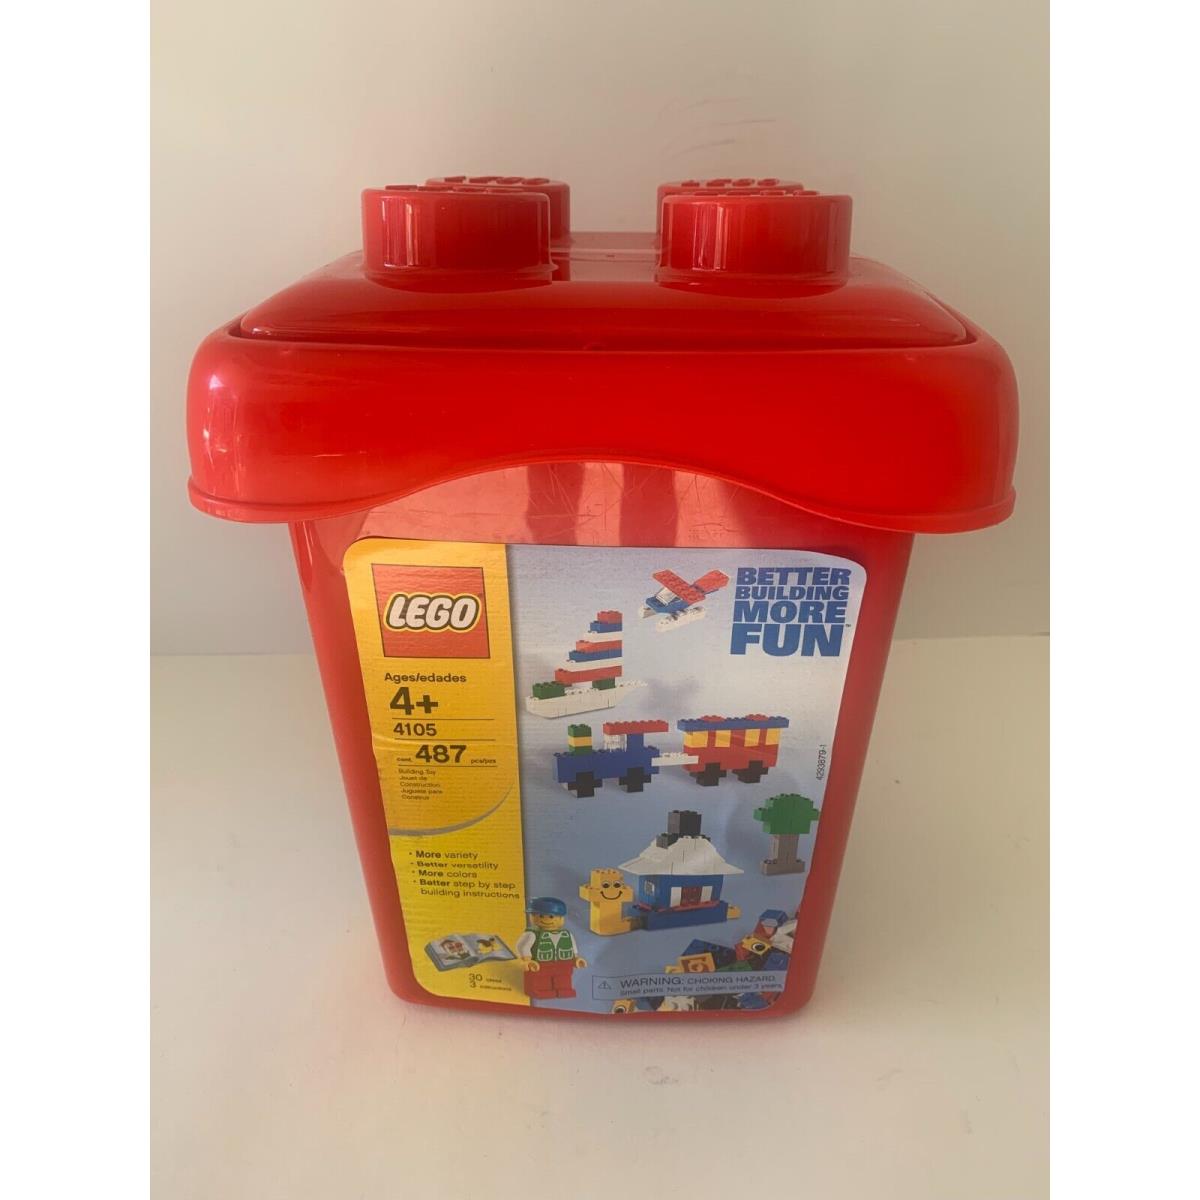 Lego 4105 Red Creator Bucket 500 Pieces Vintage